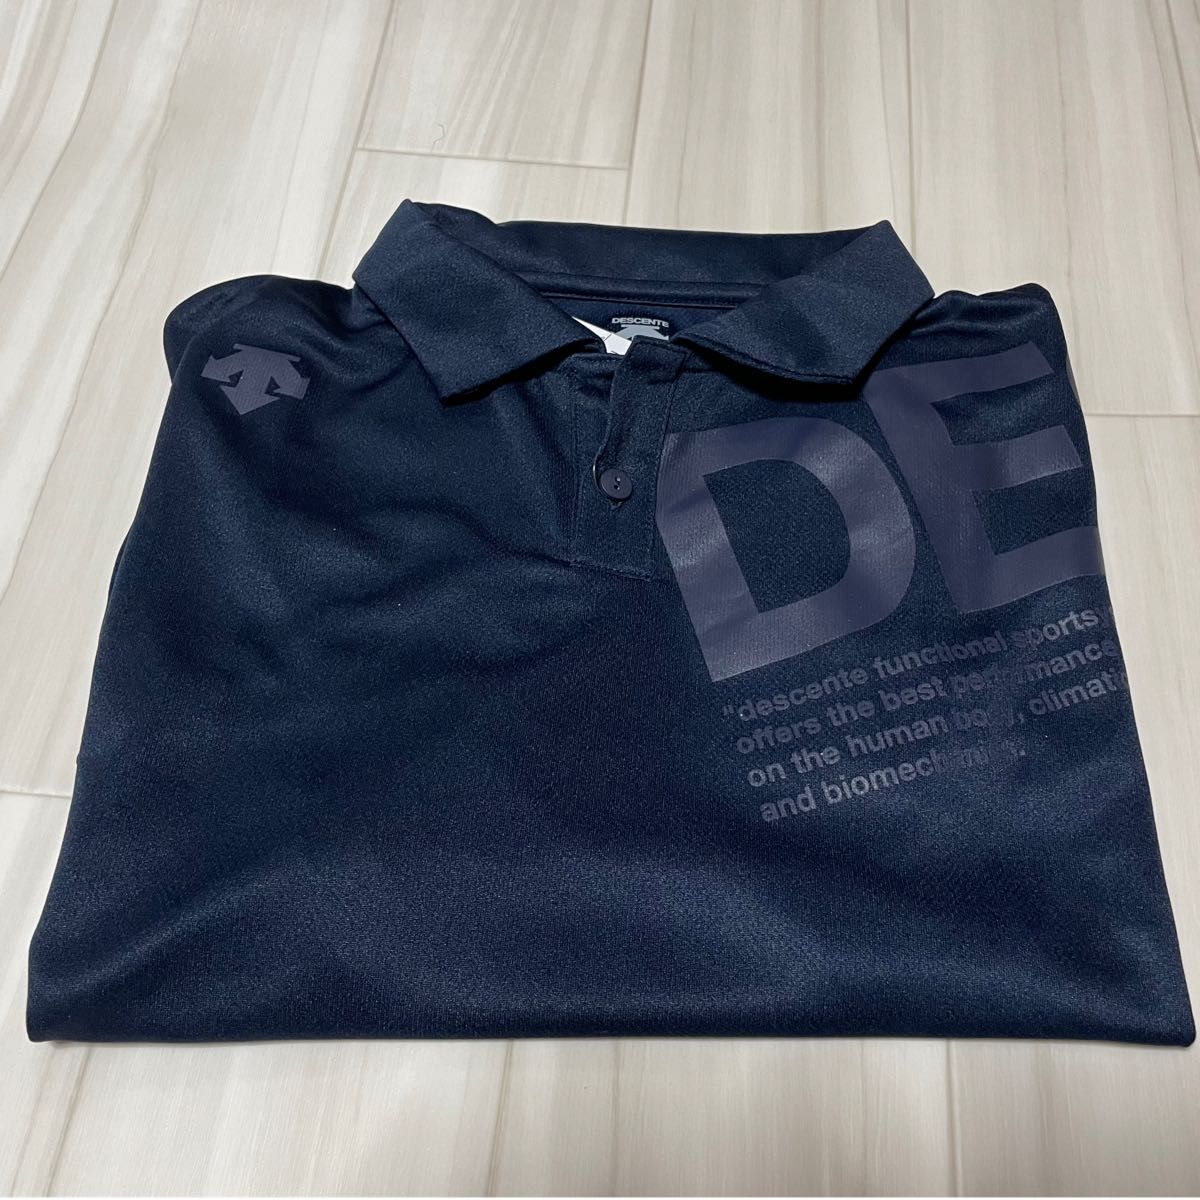 デサントDESCENTE 半袖ポロシャツ 濃紺サイズO(LL)ゴルフ、スポーツ全般に。吸水速乾 性素材、新品未使用です。